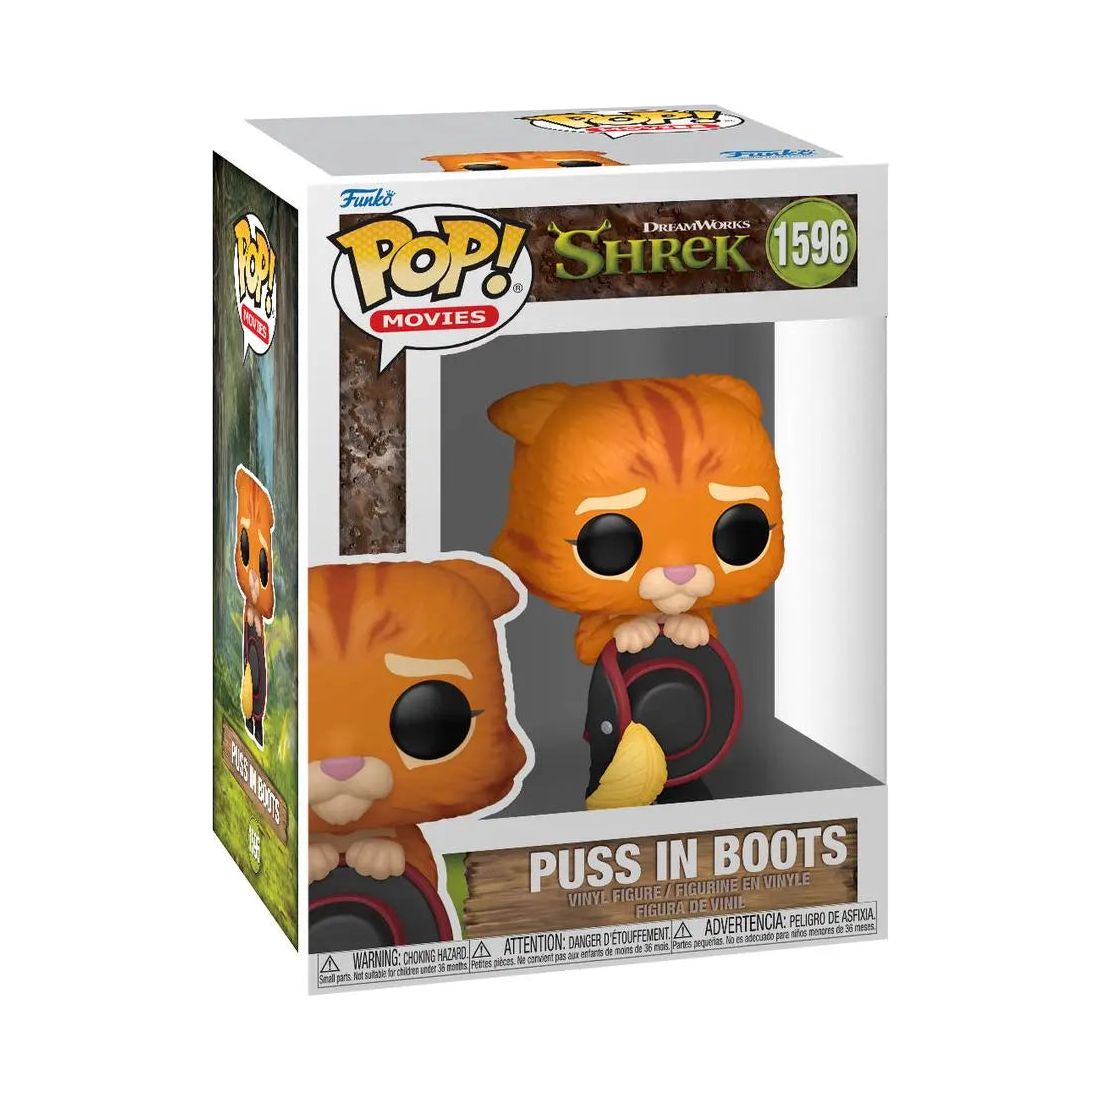 Funko Pop! Movie Shrek 1596 Puss in Boots Funko